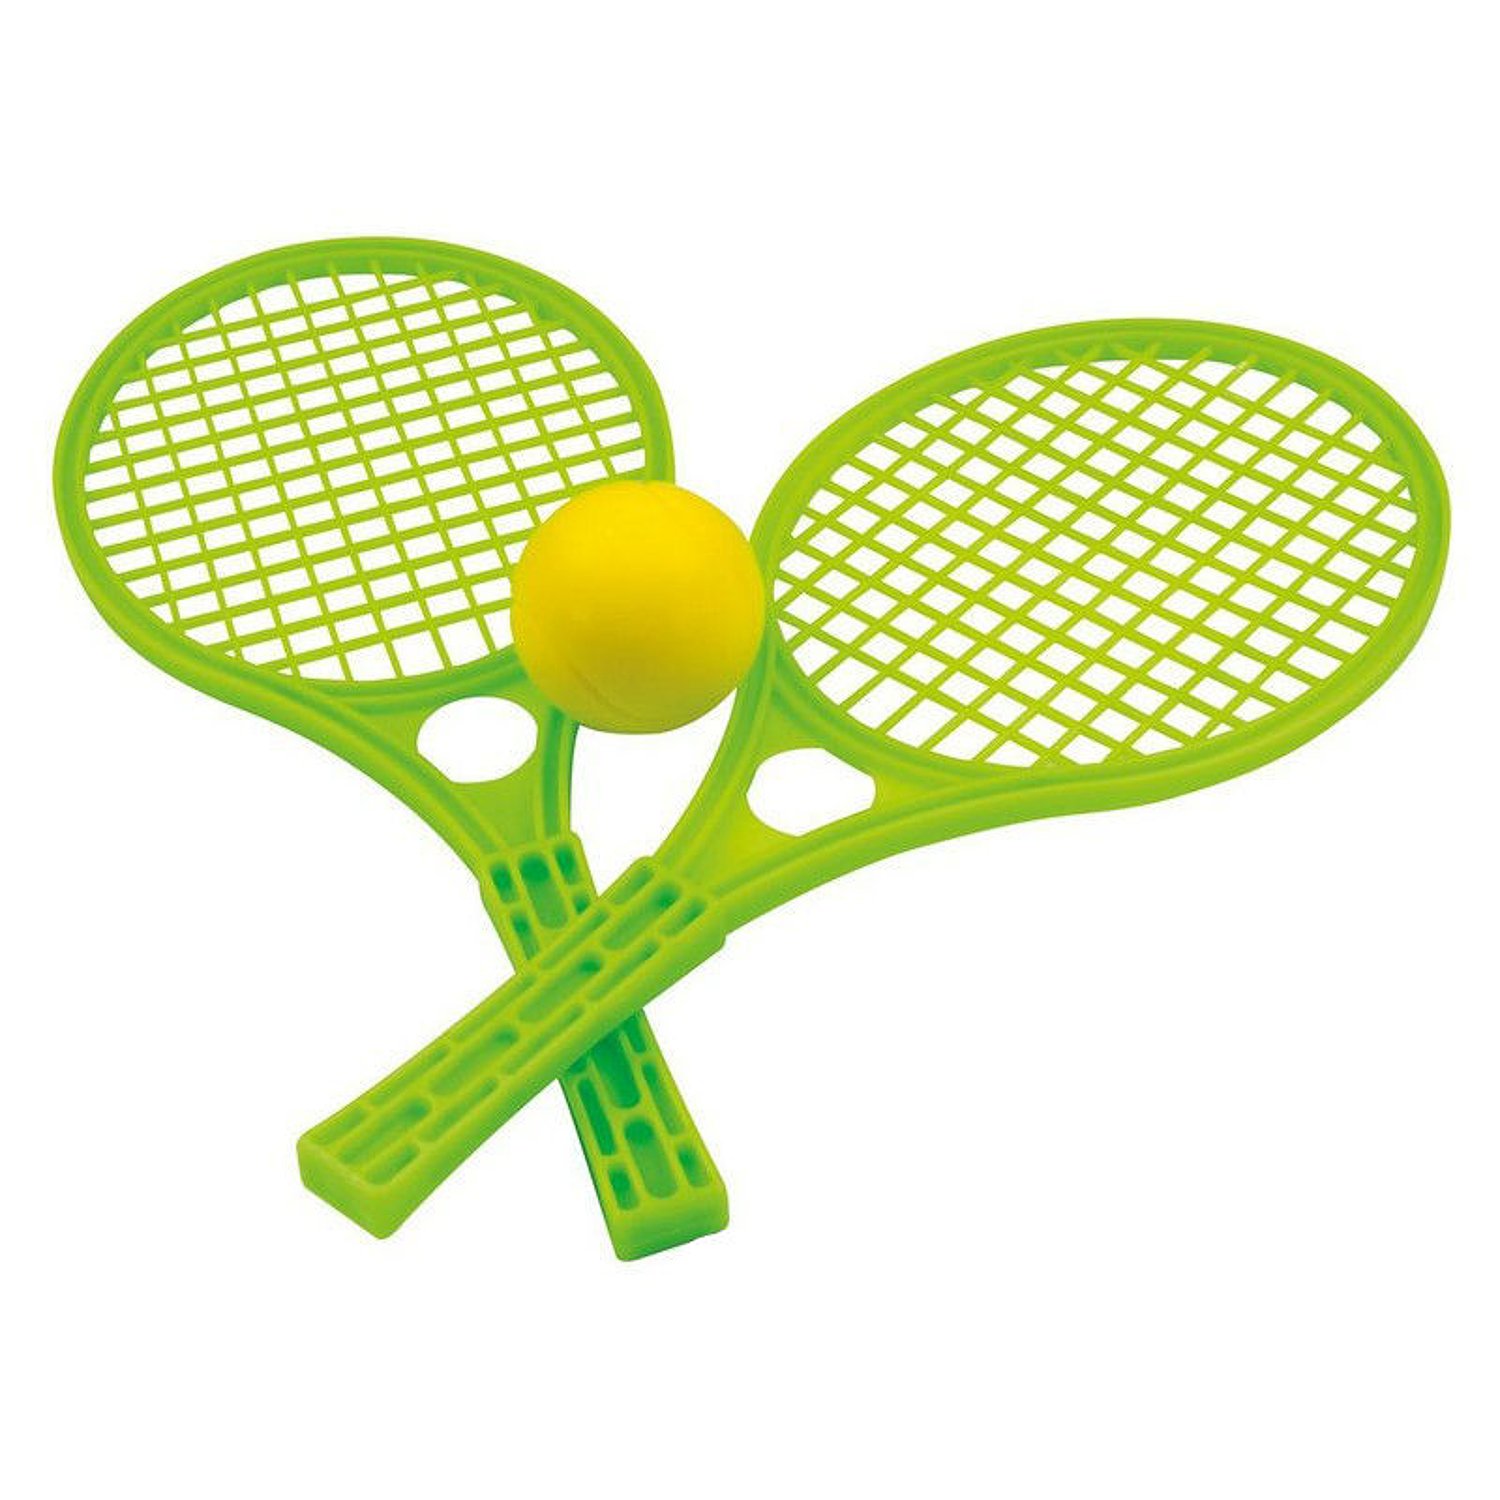 Ракетка теннис детская. Набор для тенниса 15-5055-1. Теннисная и бадминтонная ракетка. Теннисные ракетки и мячик aj1607rk. Теннис пластиковые ракетки 68602.